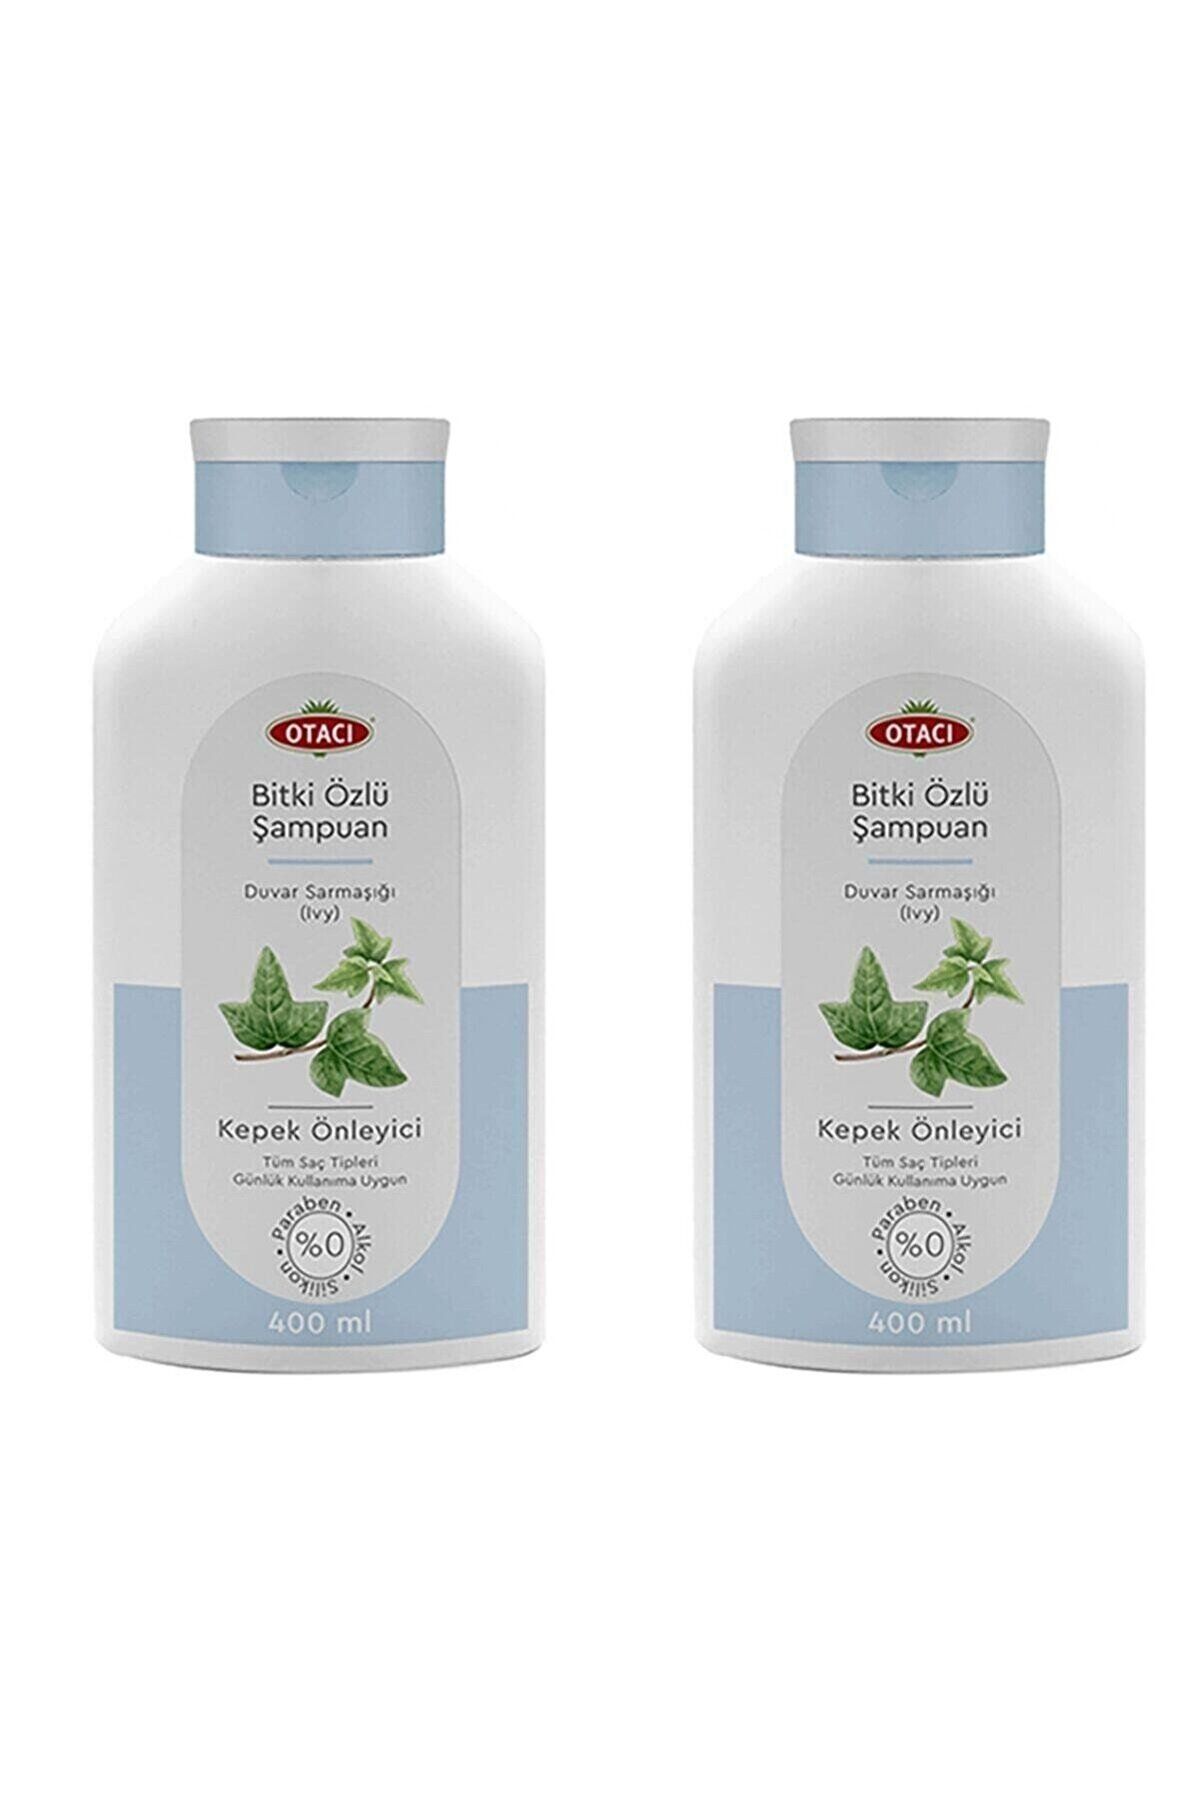 Otacı Bitki Özlü Kepek Önleyici Şampuan Duvar Sarmaşığı(IVY) 400 ml 2 Adet